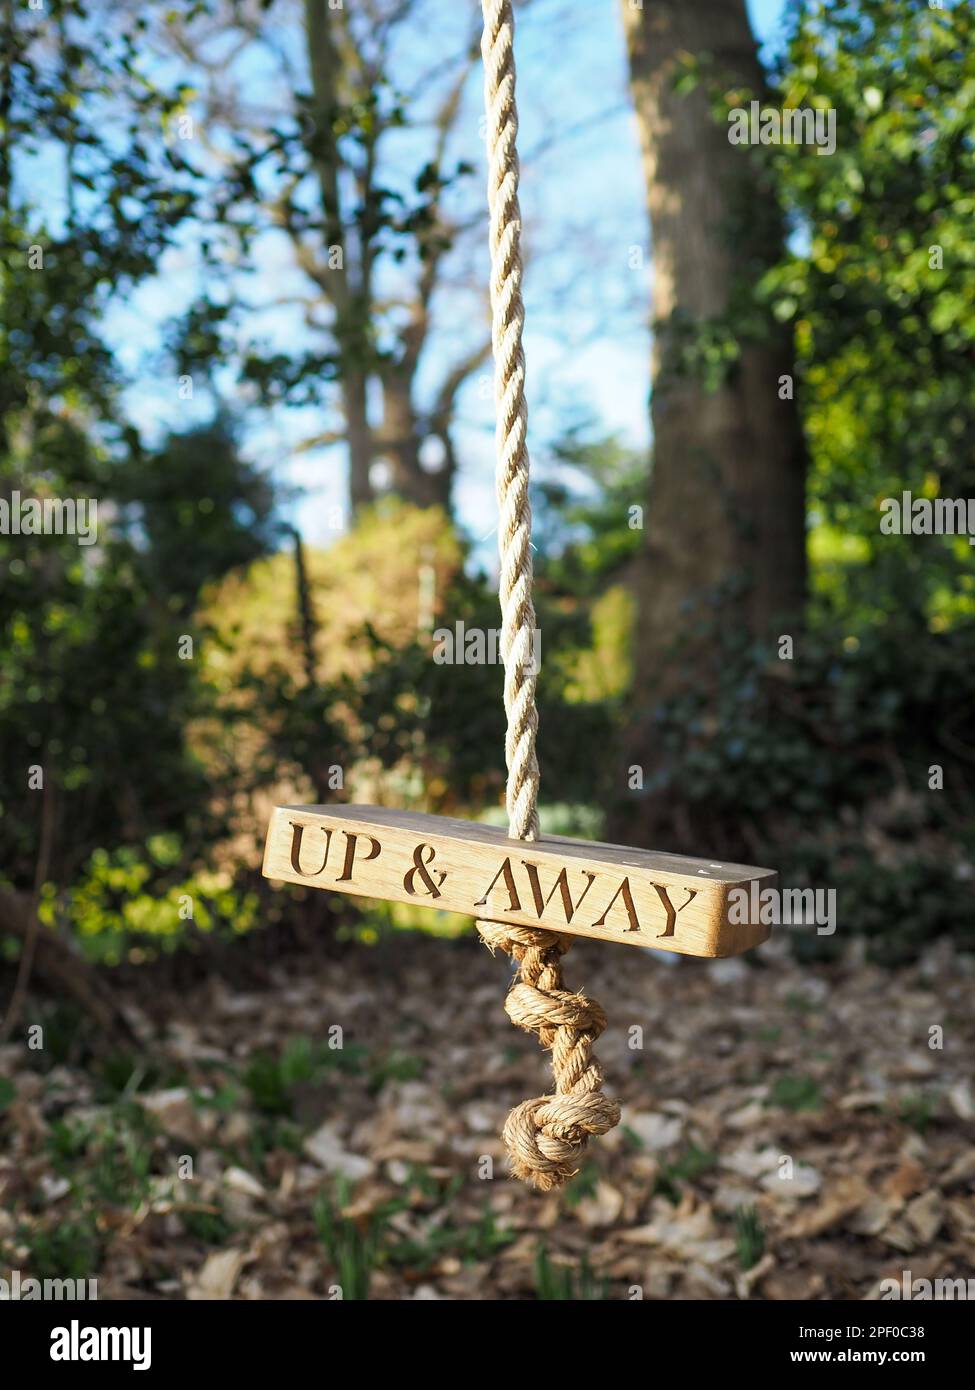 Primo piano di un'oscillazione della corda nel selvaggio con le parole 'Up & Away' sul legno, che esprimono i concetti di libertà, benessere e connessione alla natura Foto Stock